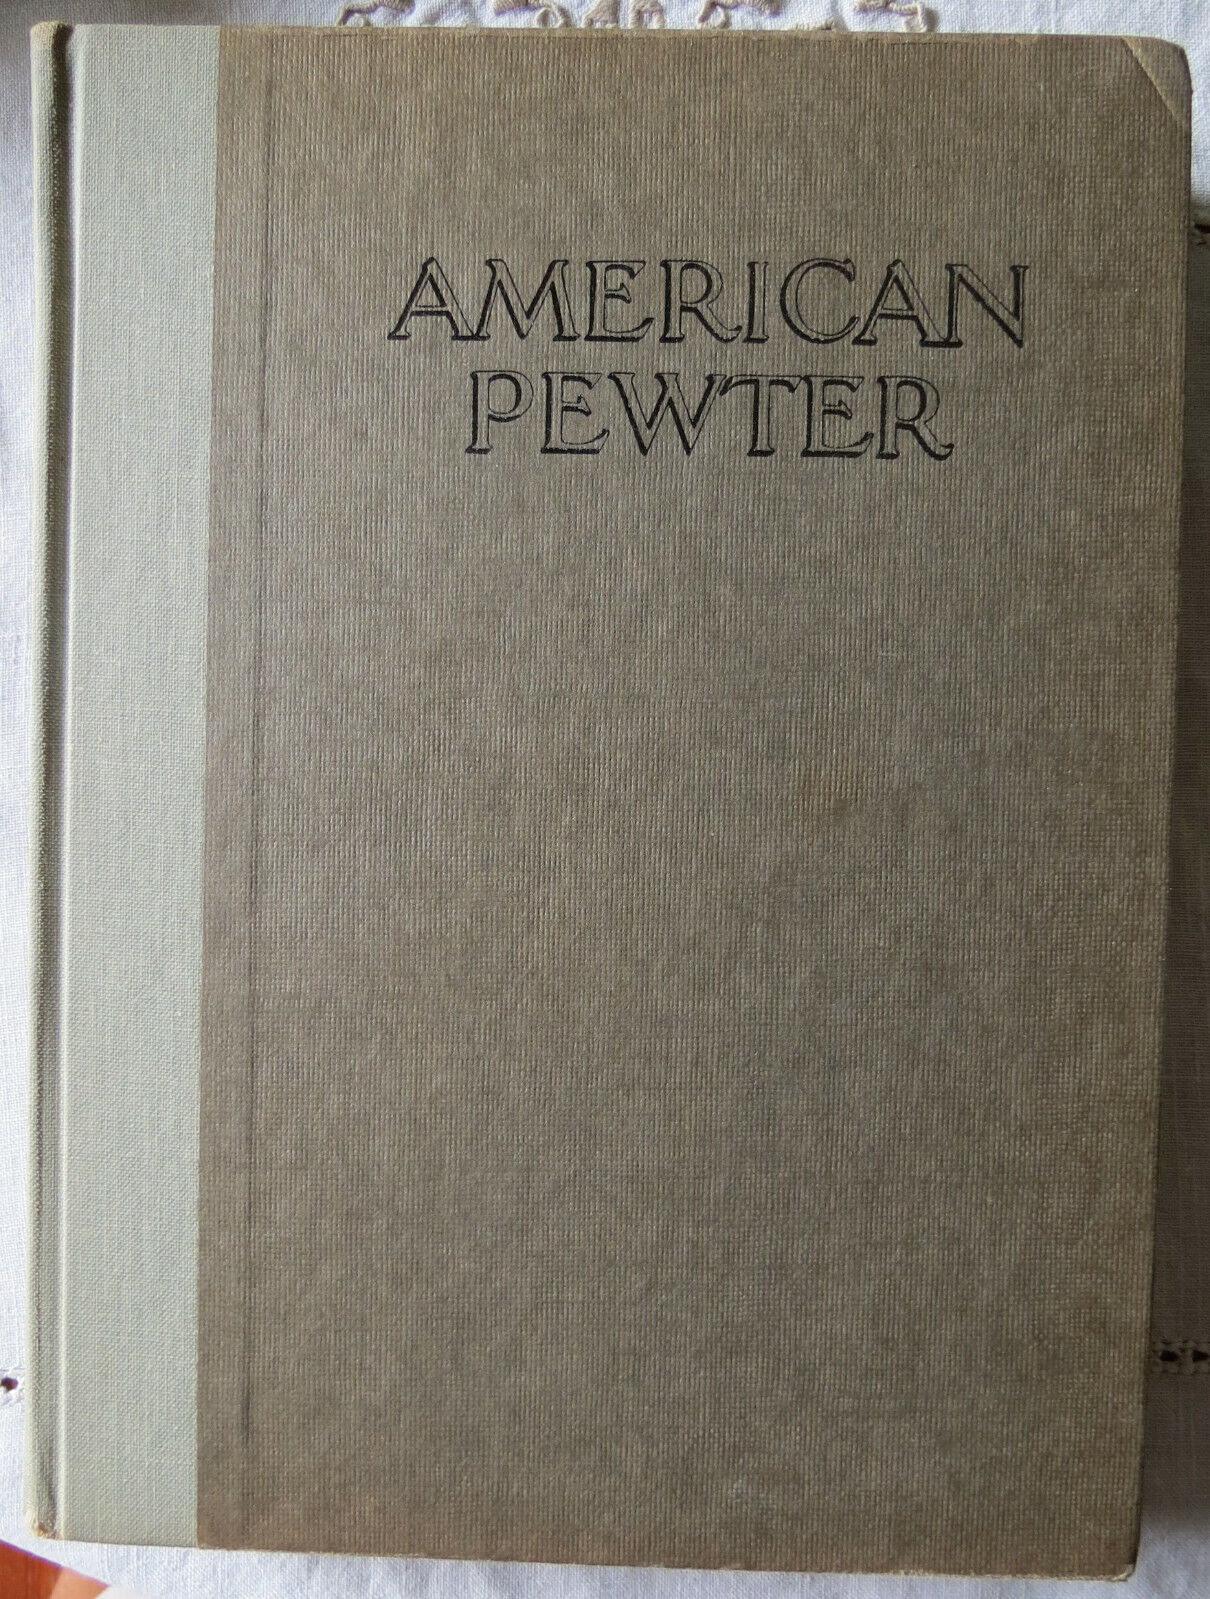 AMERICAN PEWTER - J.B. KERFOOT c 1924